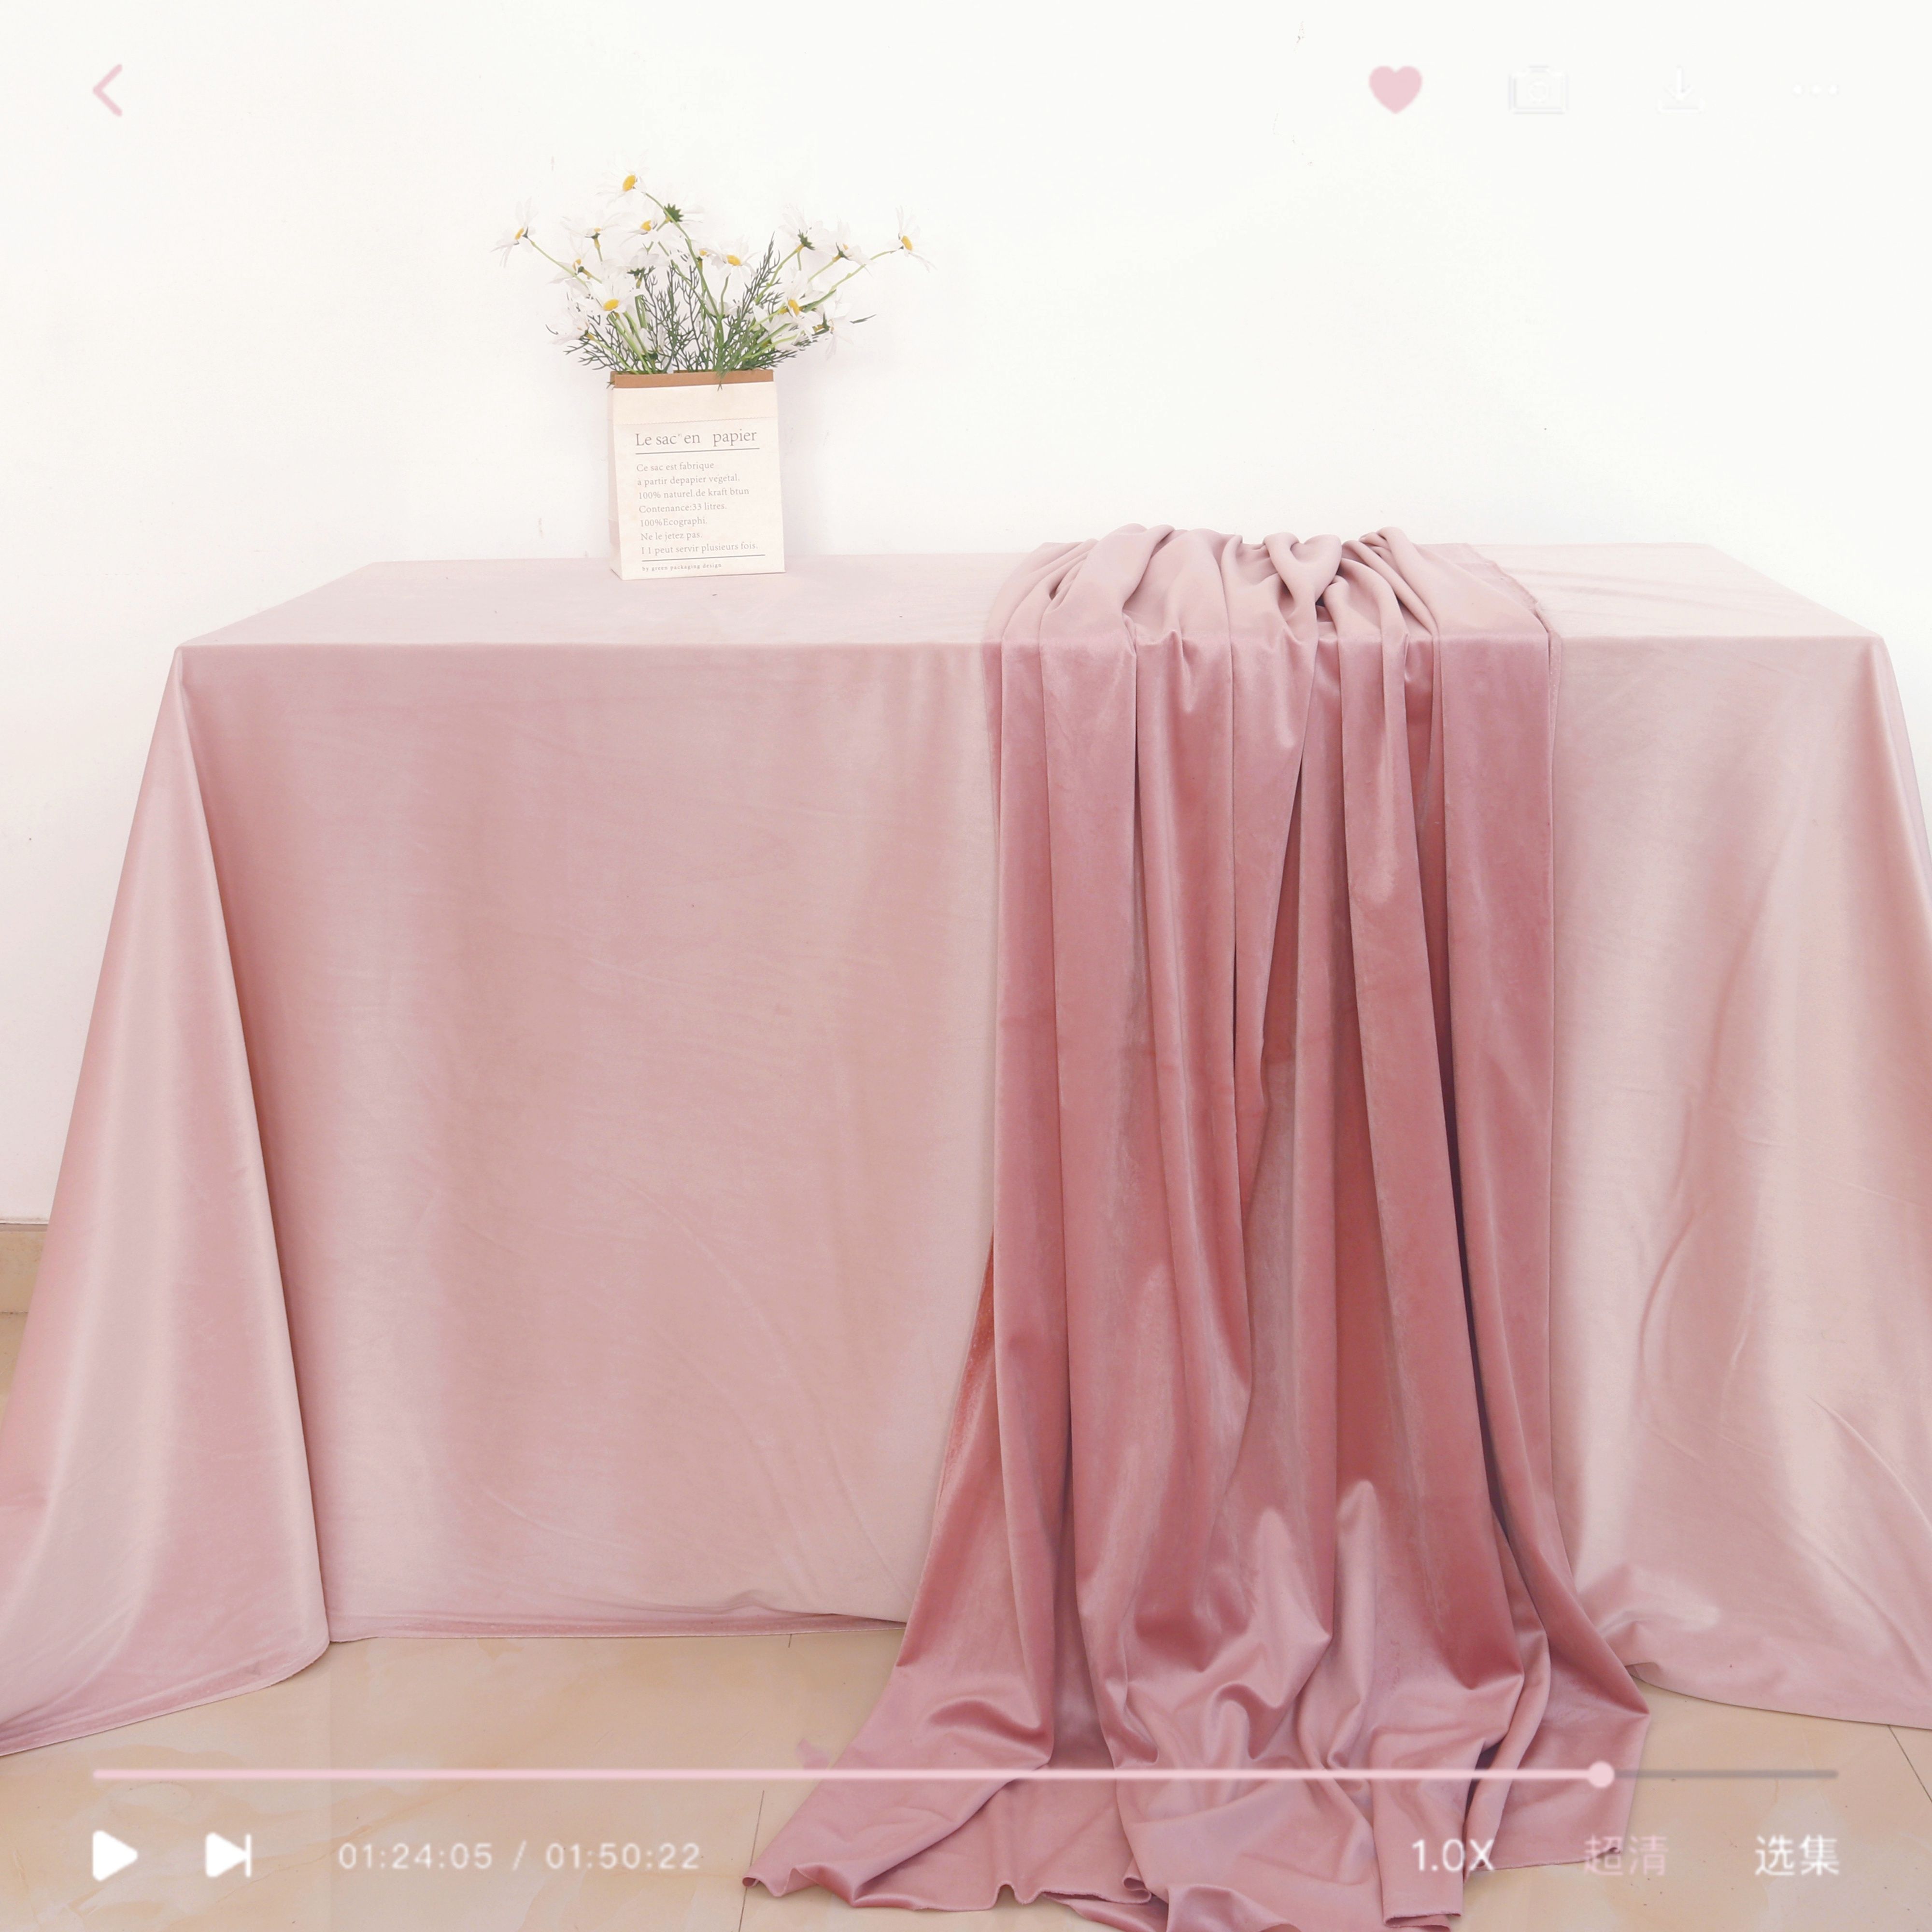 粉色红色丝绒桌布甜品台茶歇台布置户外婚礼装饰生日活动布展背景